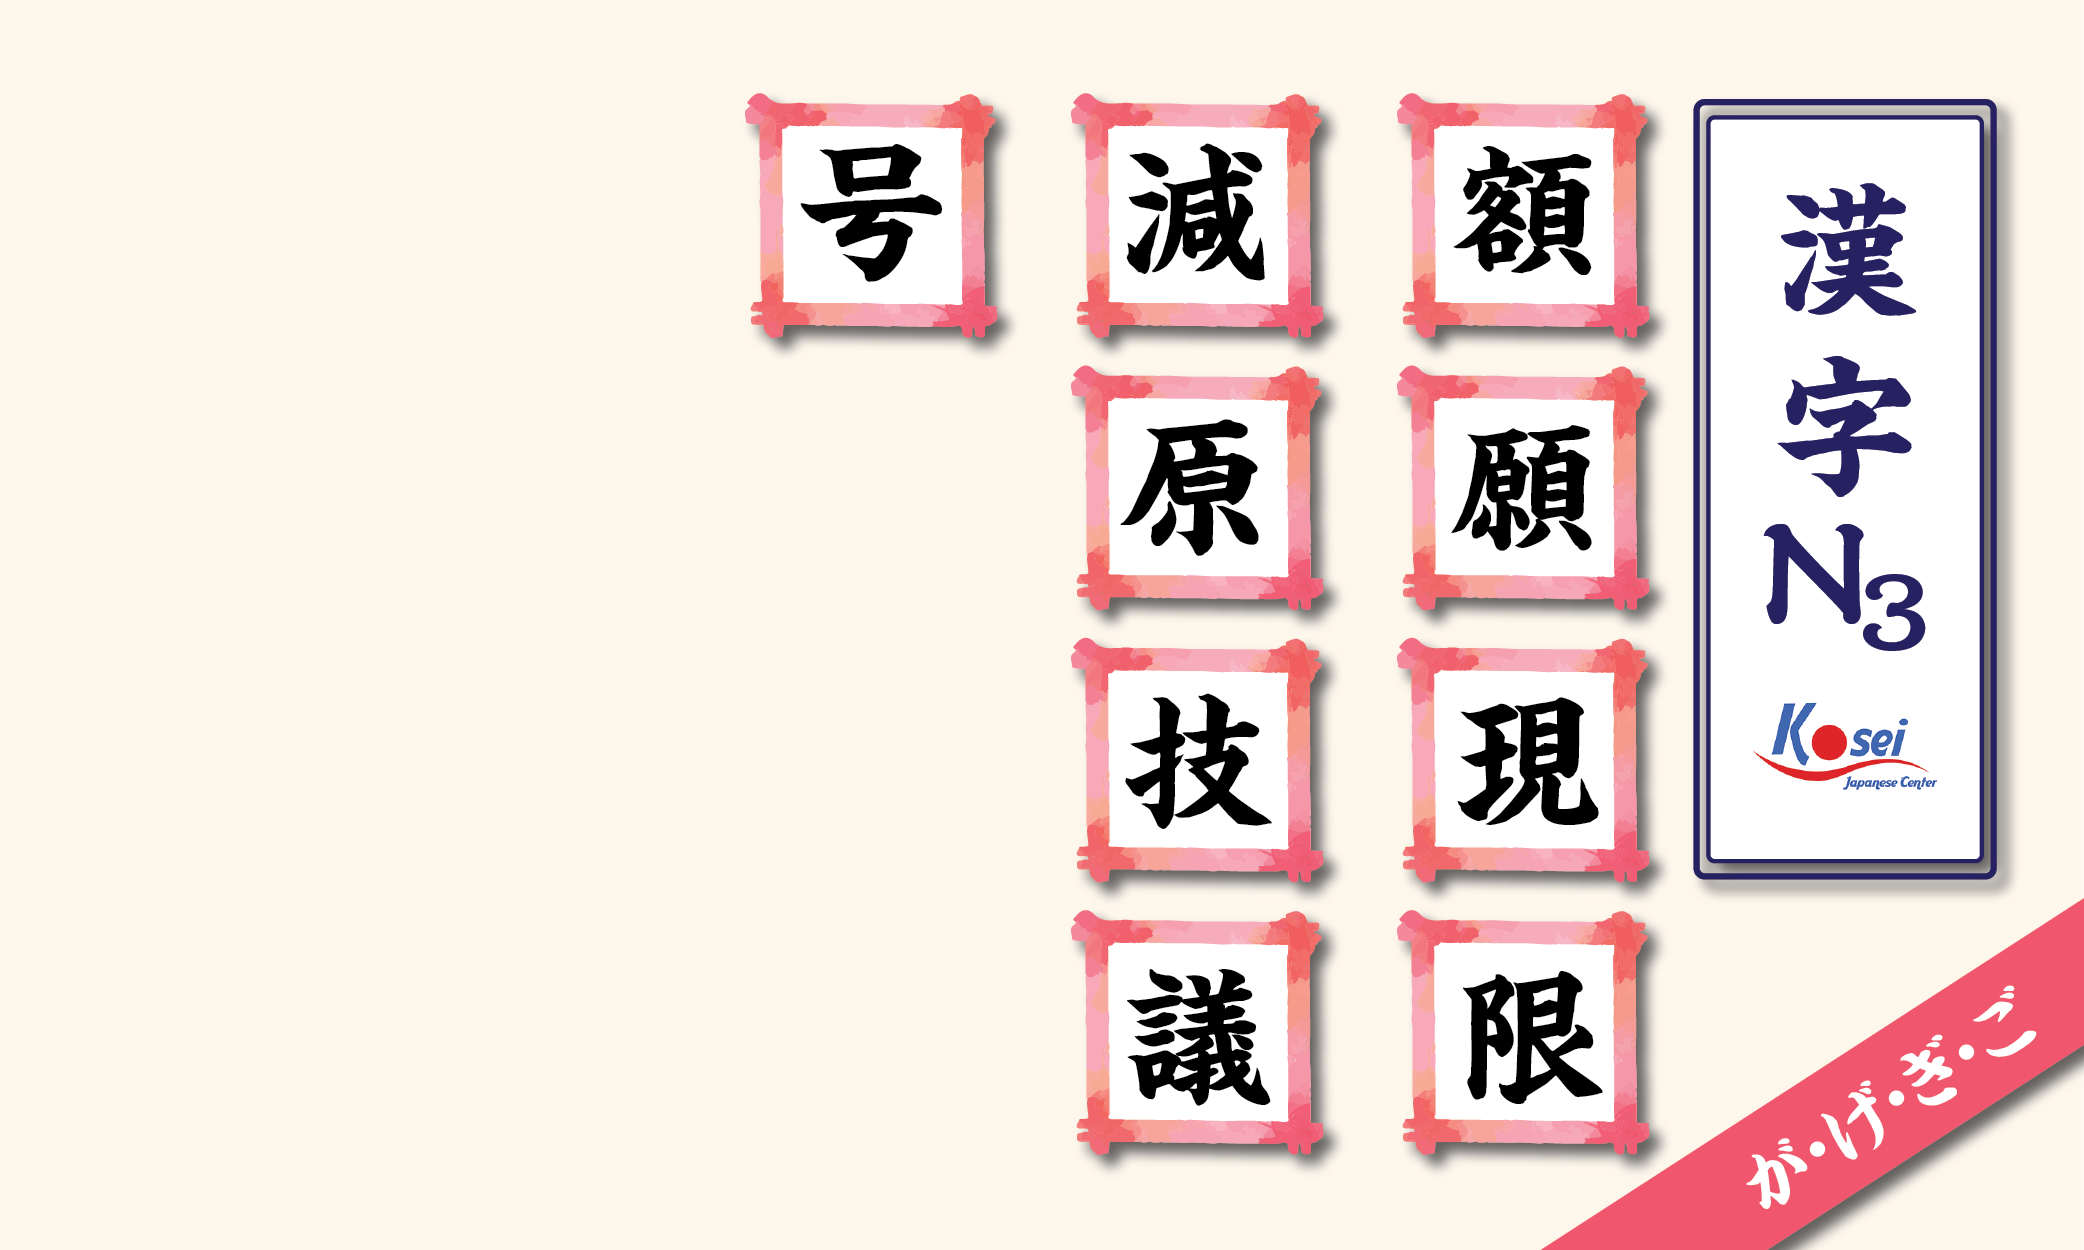 kanji n3 theo âm on hàng g